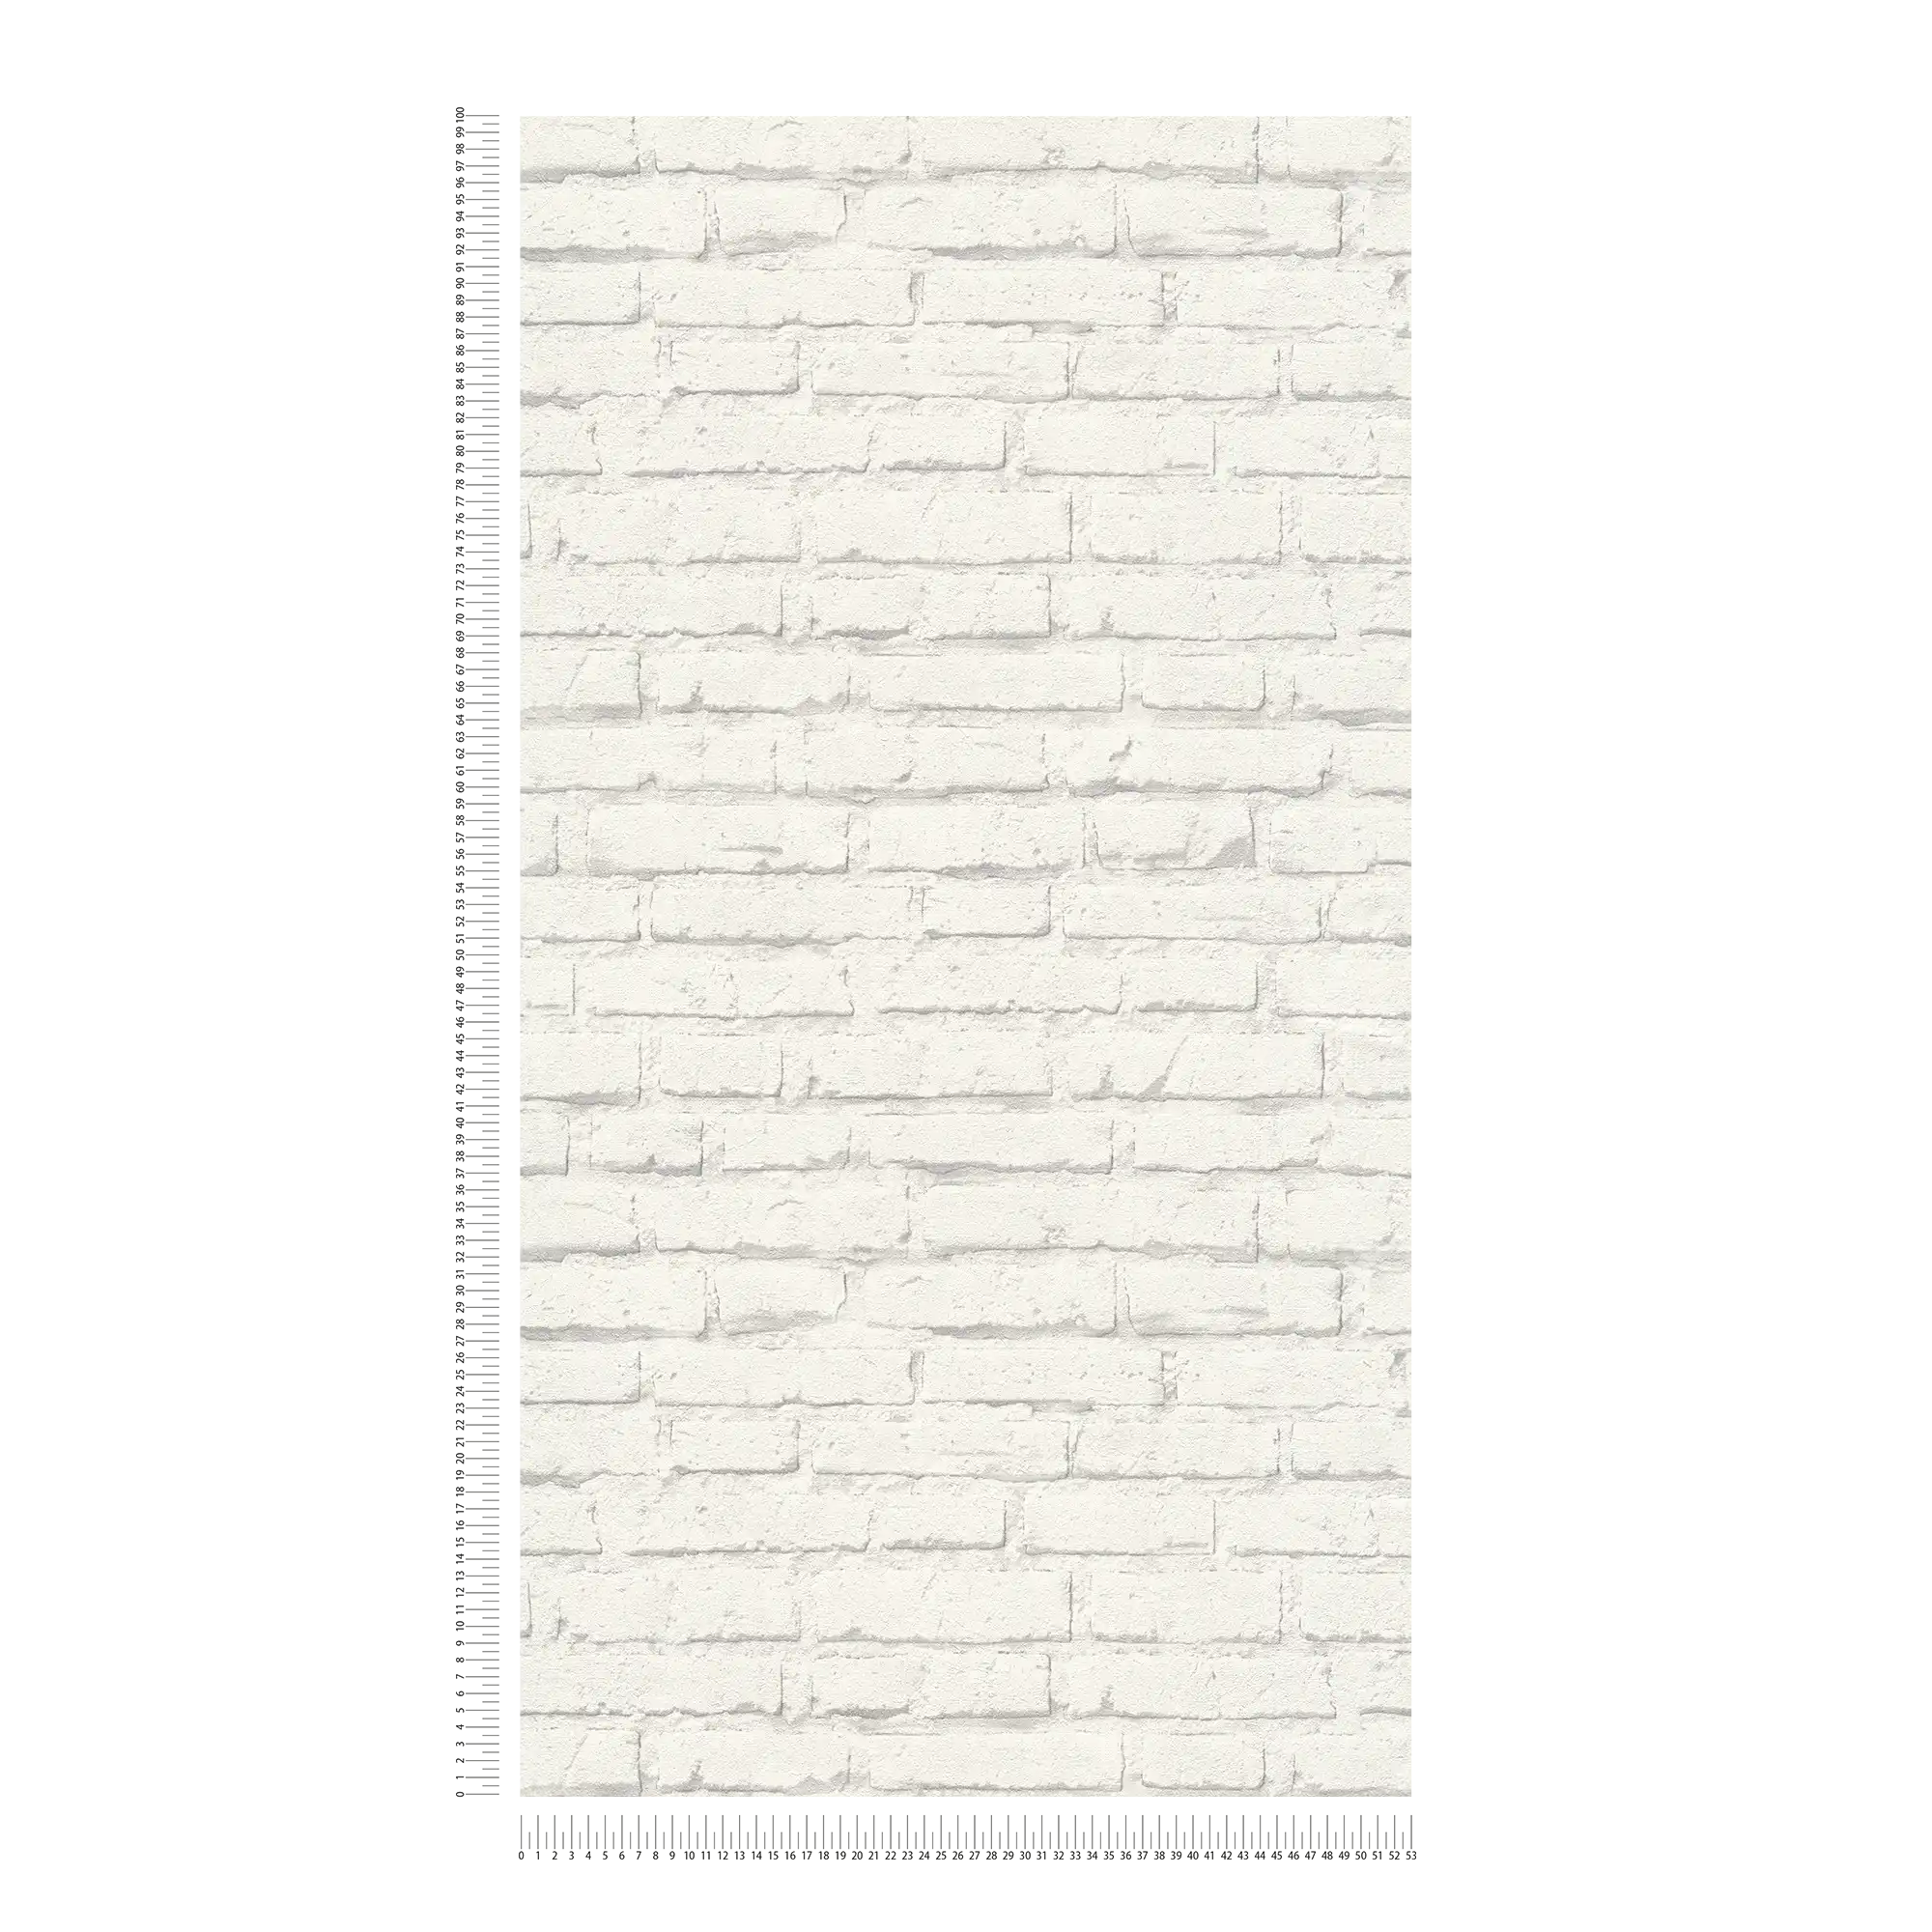             Papel pintado de piedra, pared de ladrillo blanco con textura - Gris, Blanco
        